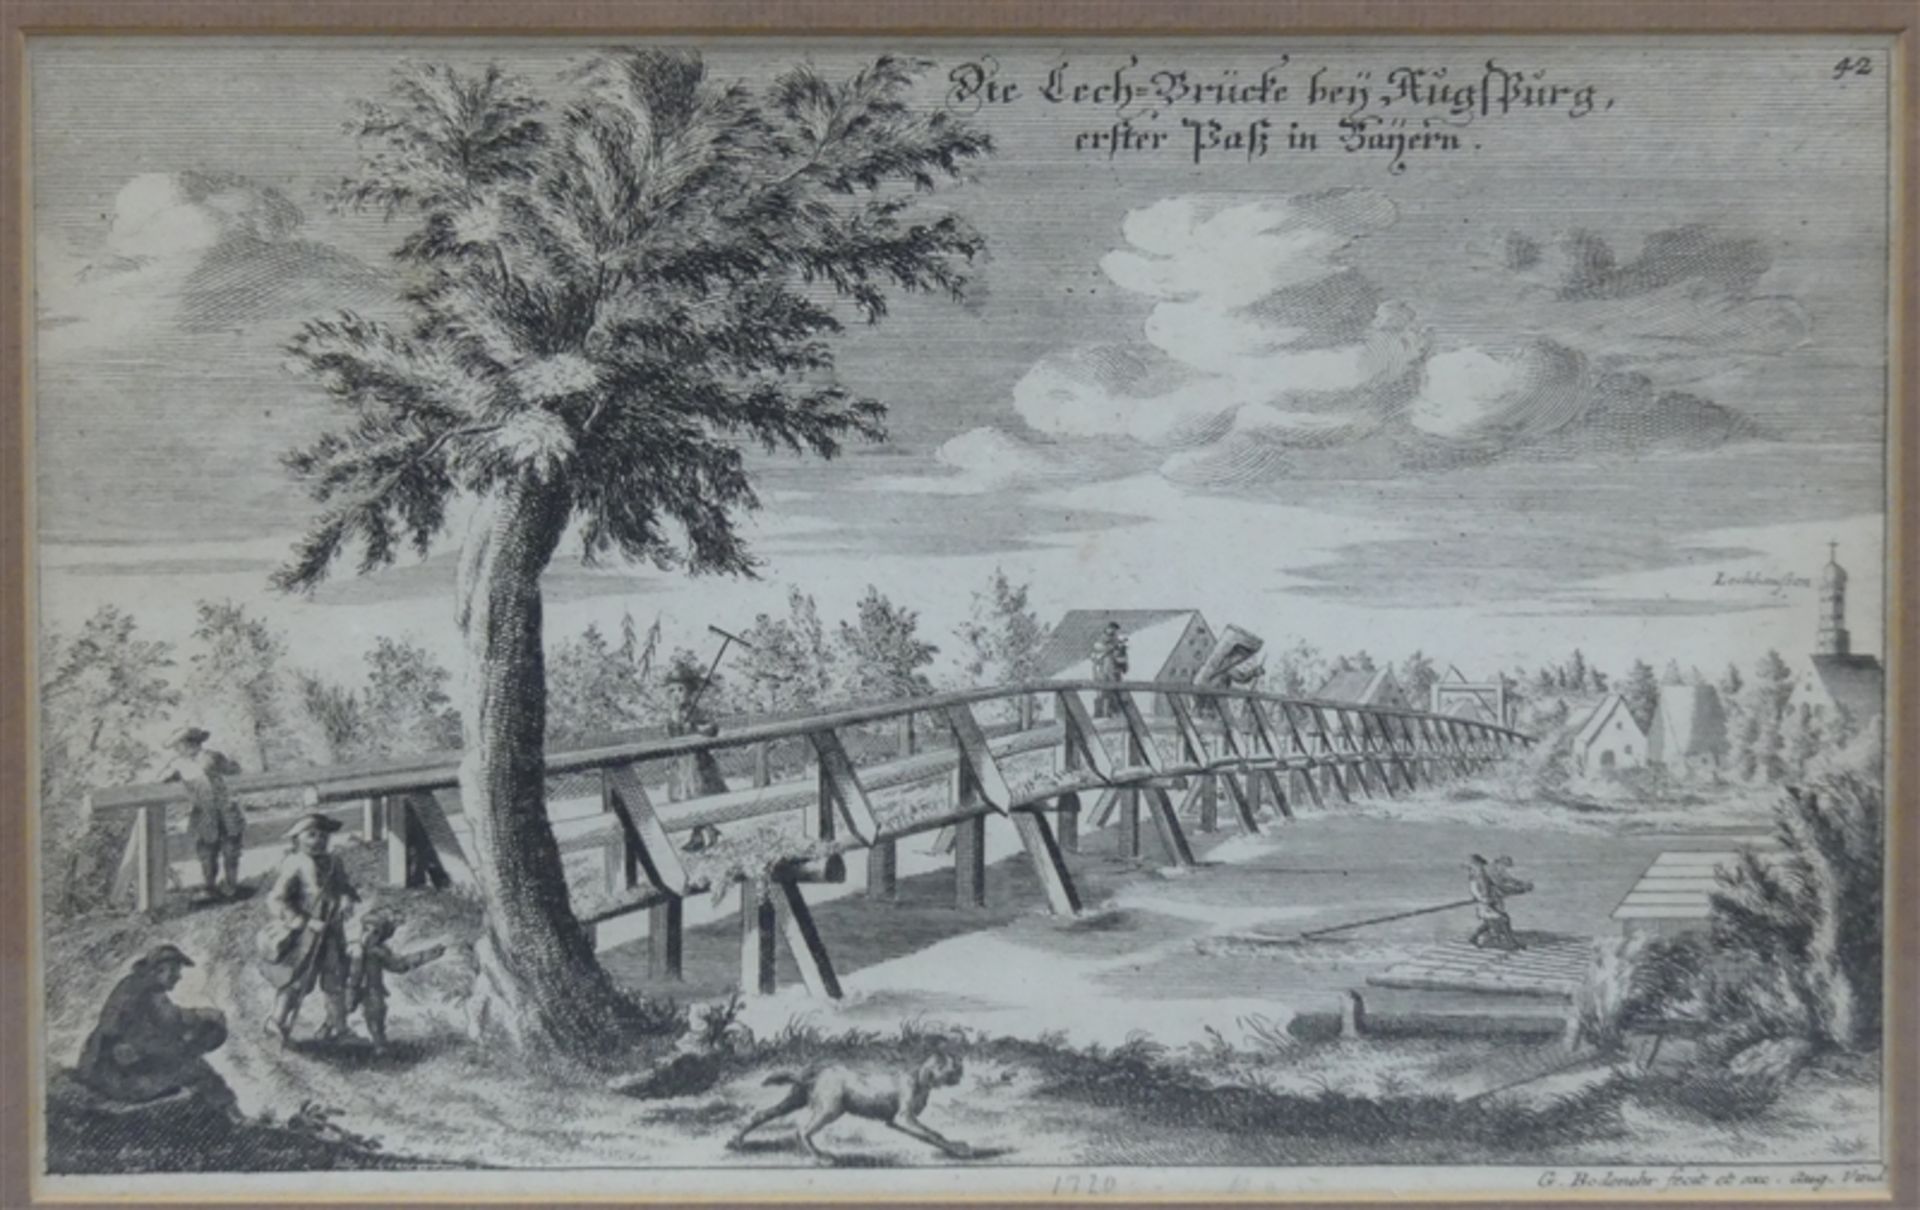 Kupferstich Die Lech-Brücke bey Augsburg erster Paß in Bayern, Gabriel Bodenehr, 18 x 28,5 cm, im